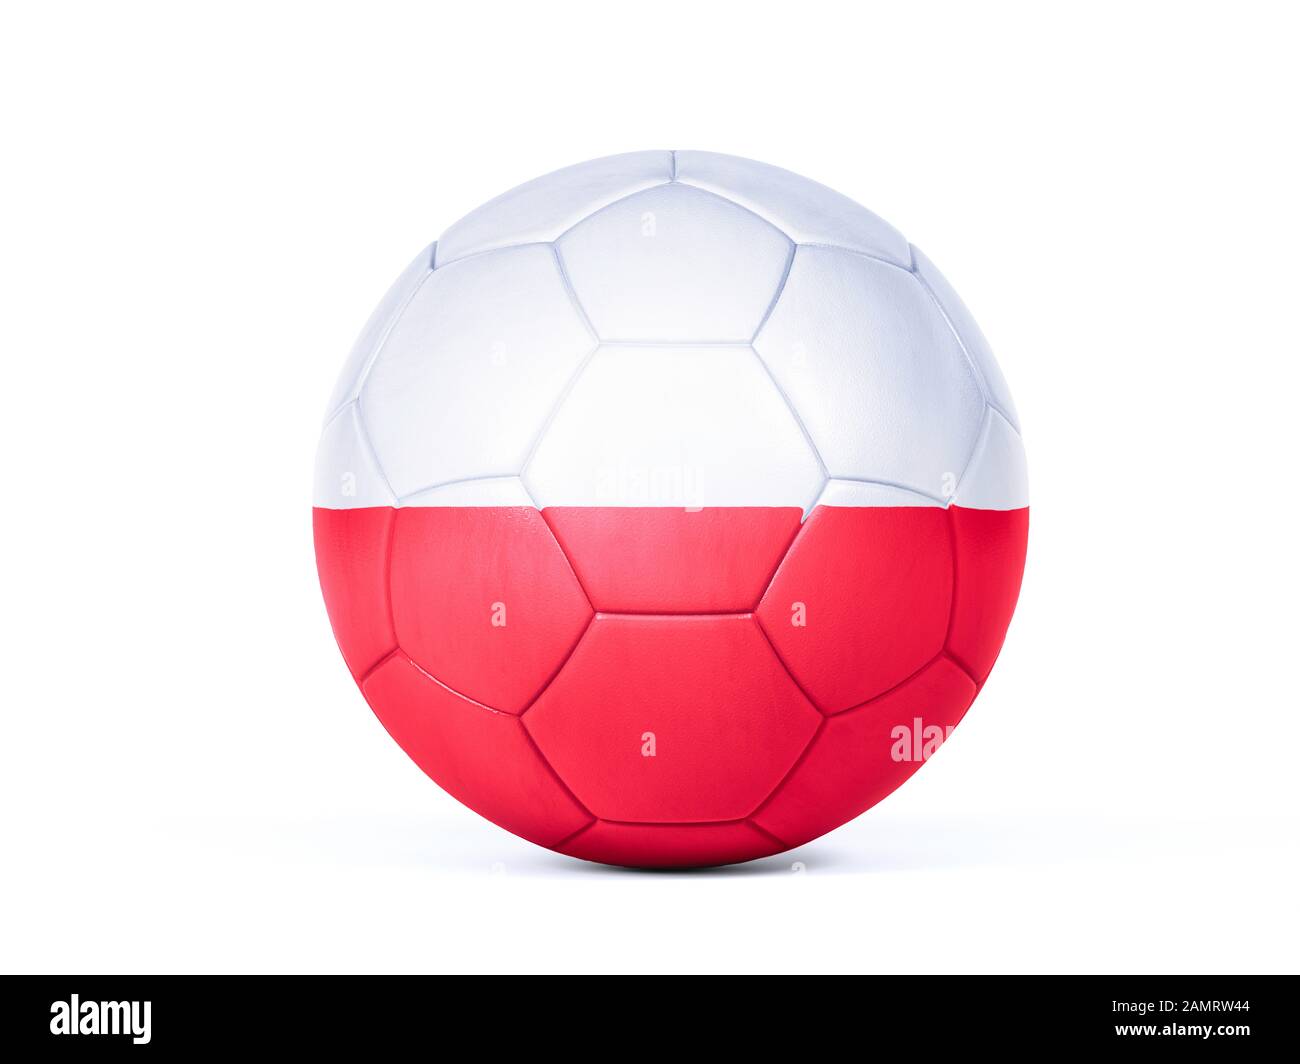 Pallone da calcio o da calcio con i colori della bandiera nazionale polacca concettuale del supporto di squadra in campionati o la Coppa del mondo isolato su bianco Foto Stock